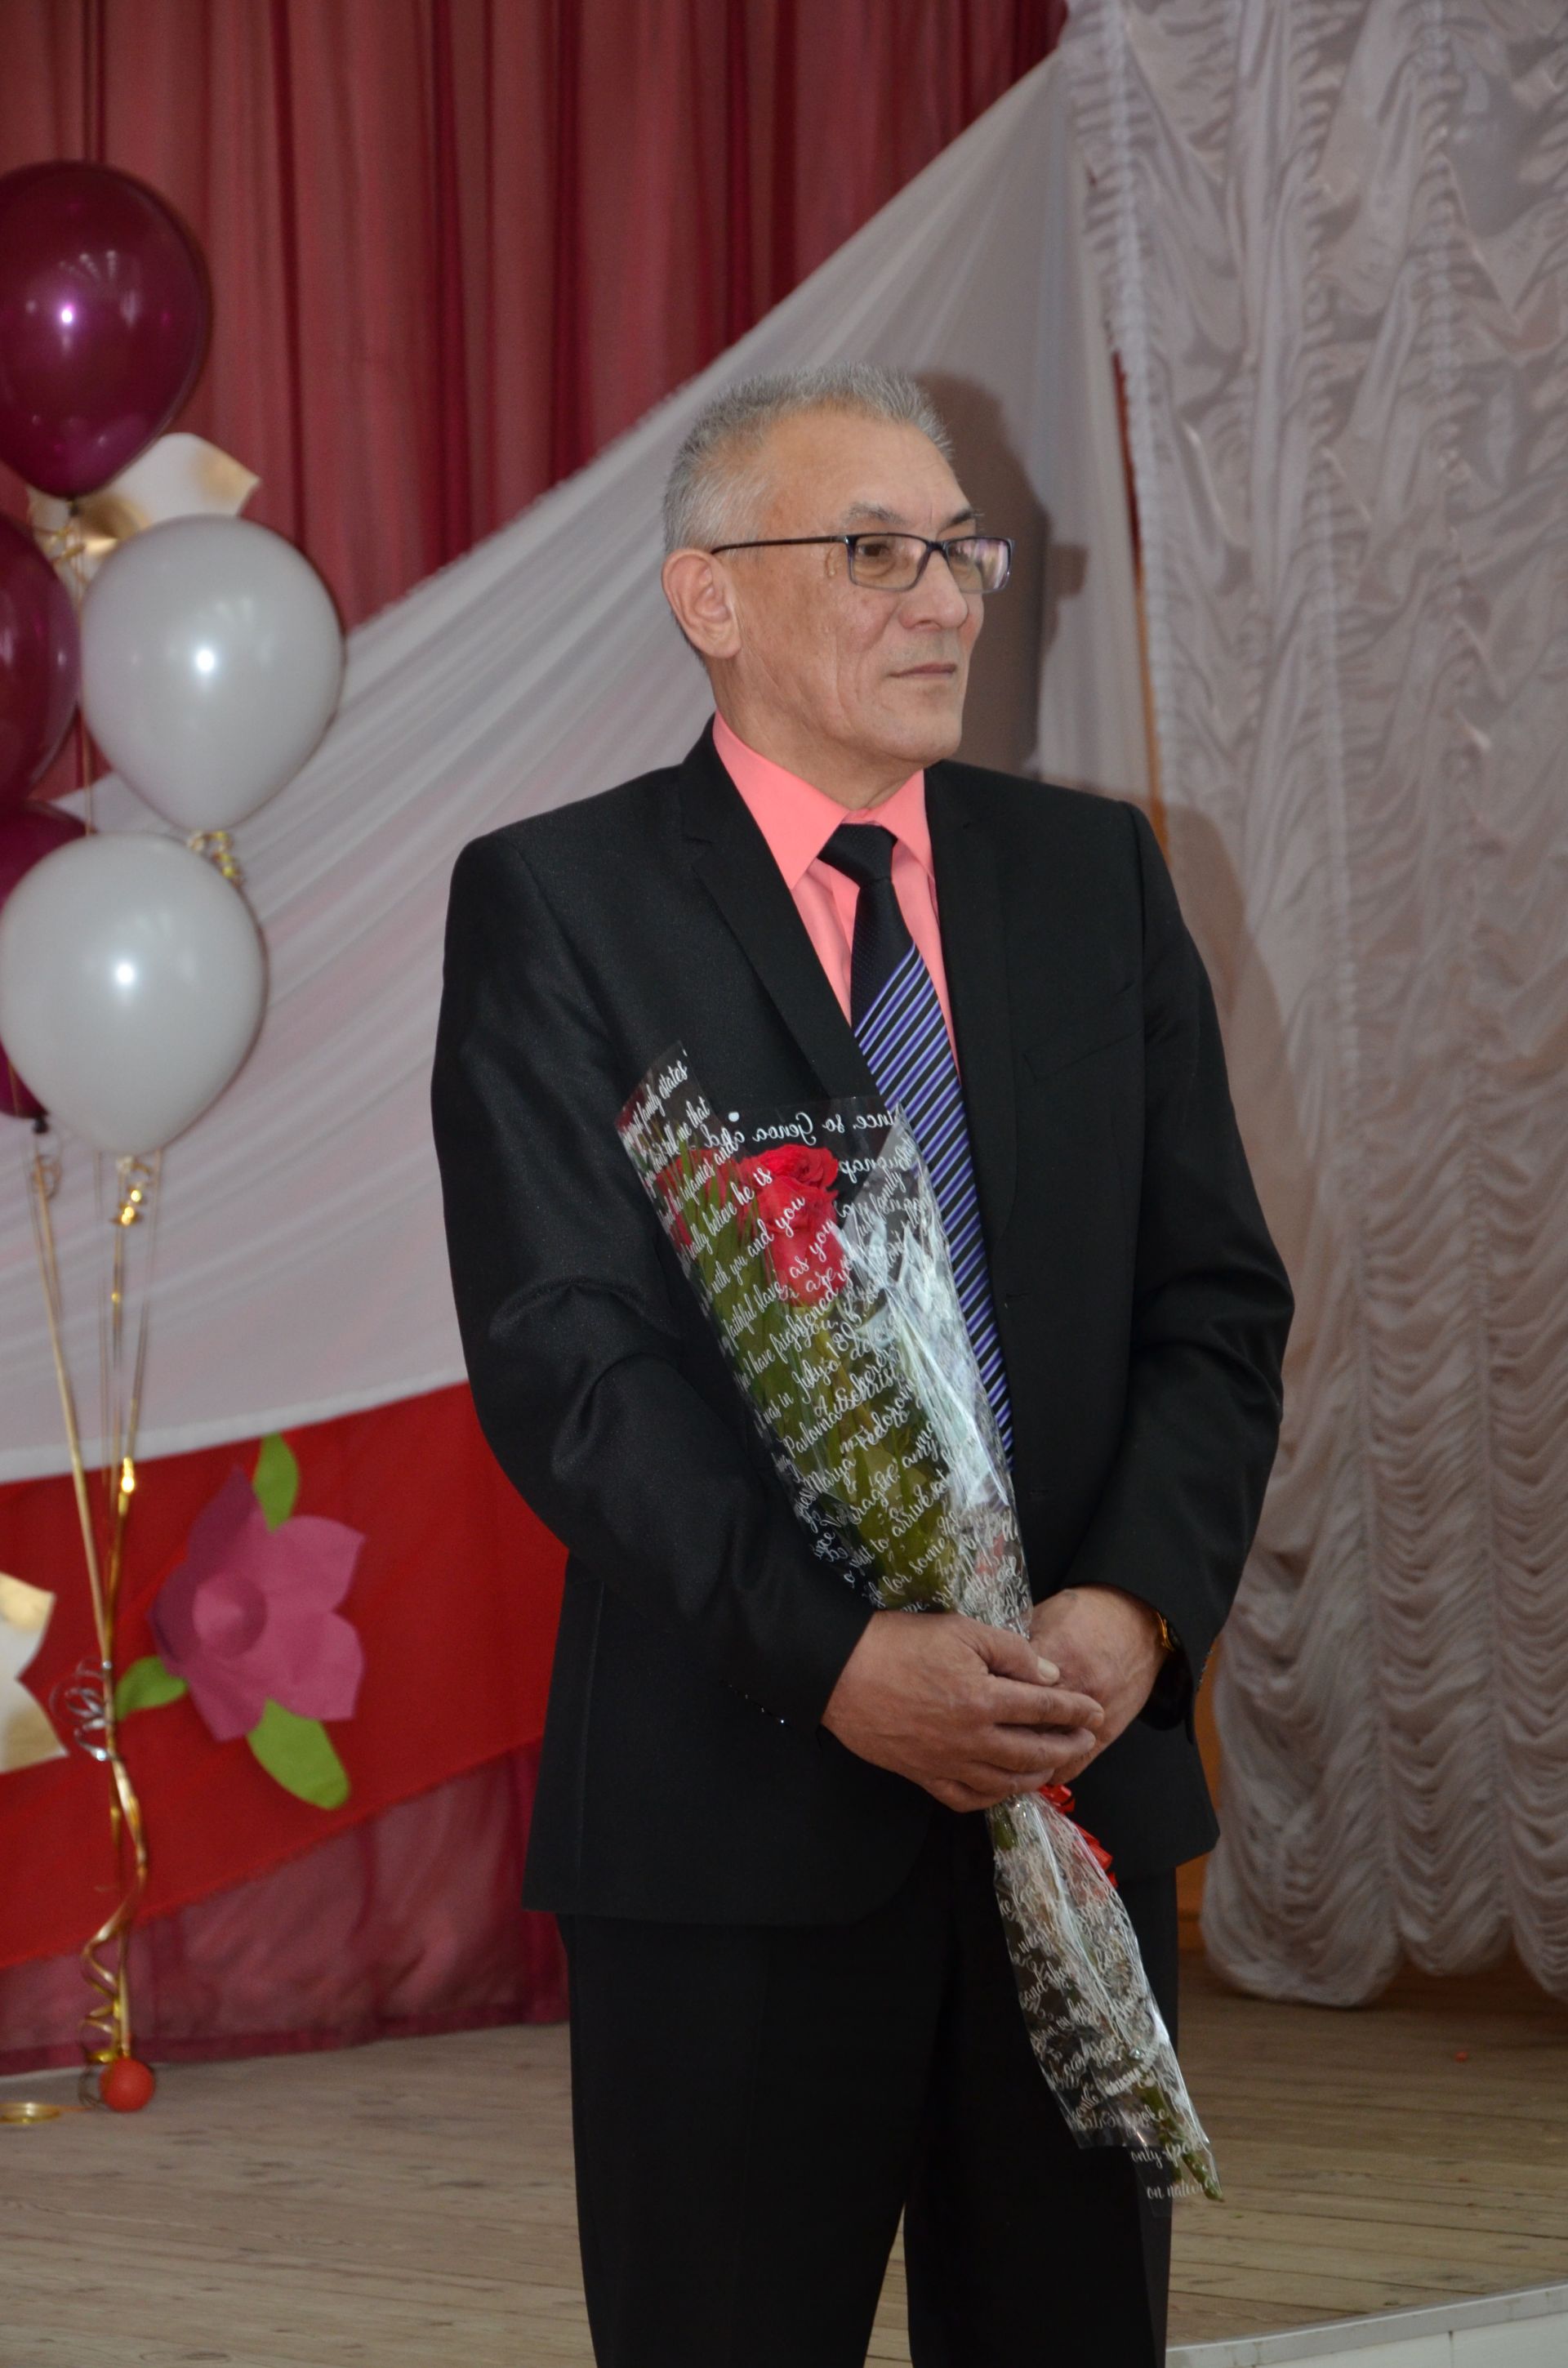 Старейшая школа Бавлов отметила 90-летний юбилей